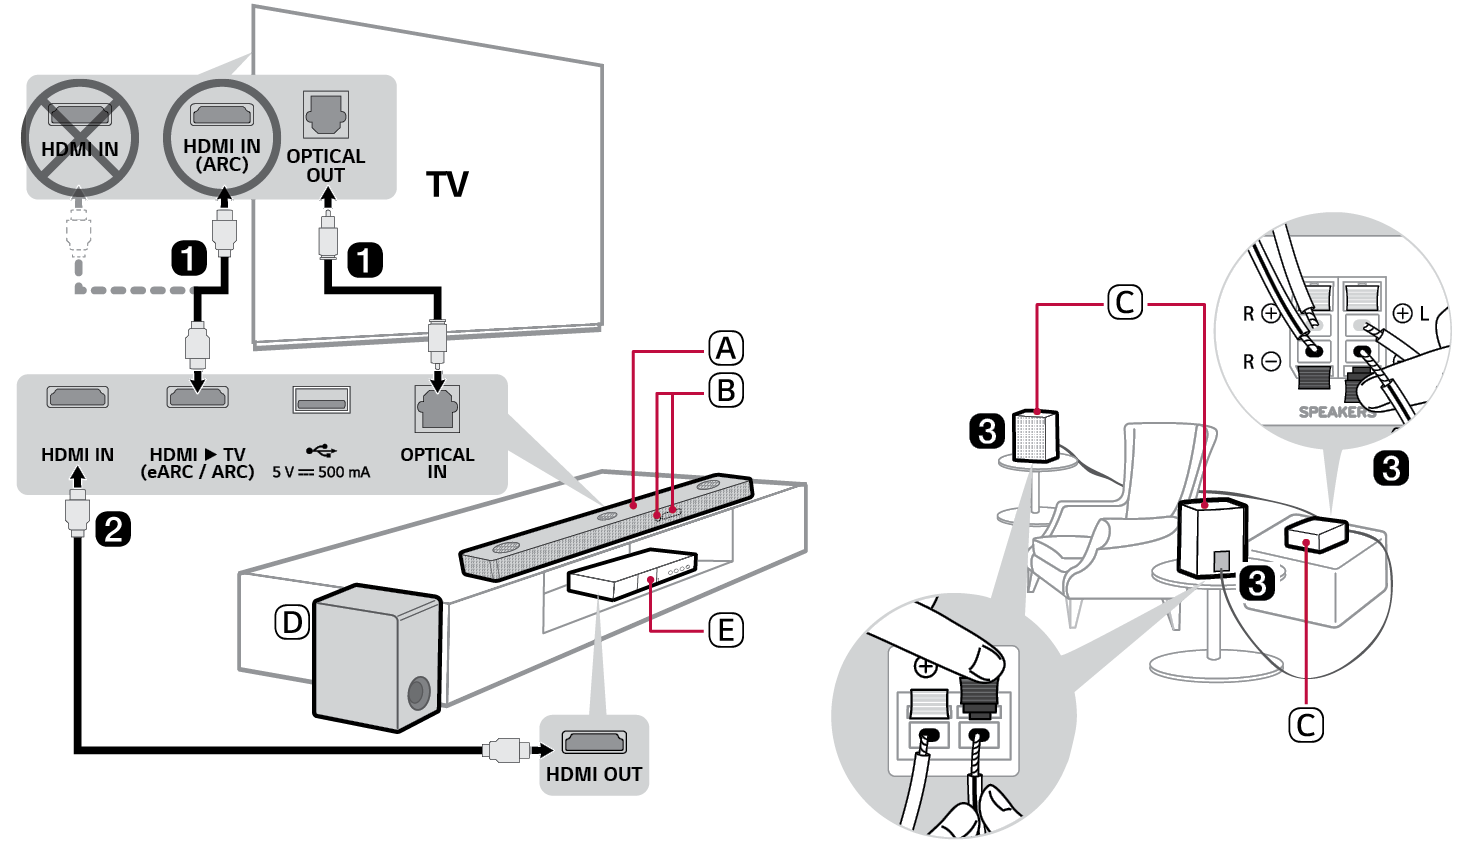 Librairie d'aide : [Vidéo] LG TV - Connecter une barre de son au téléviseur  : audionumérique optique, Bluetooth ou HDMI